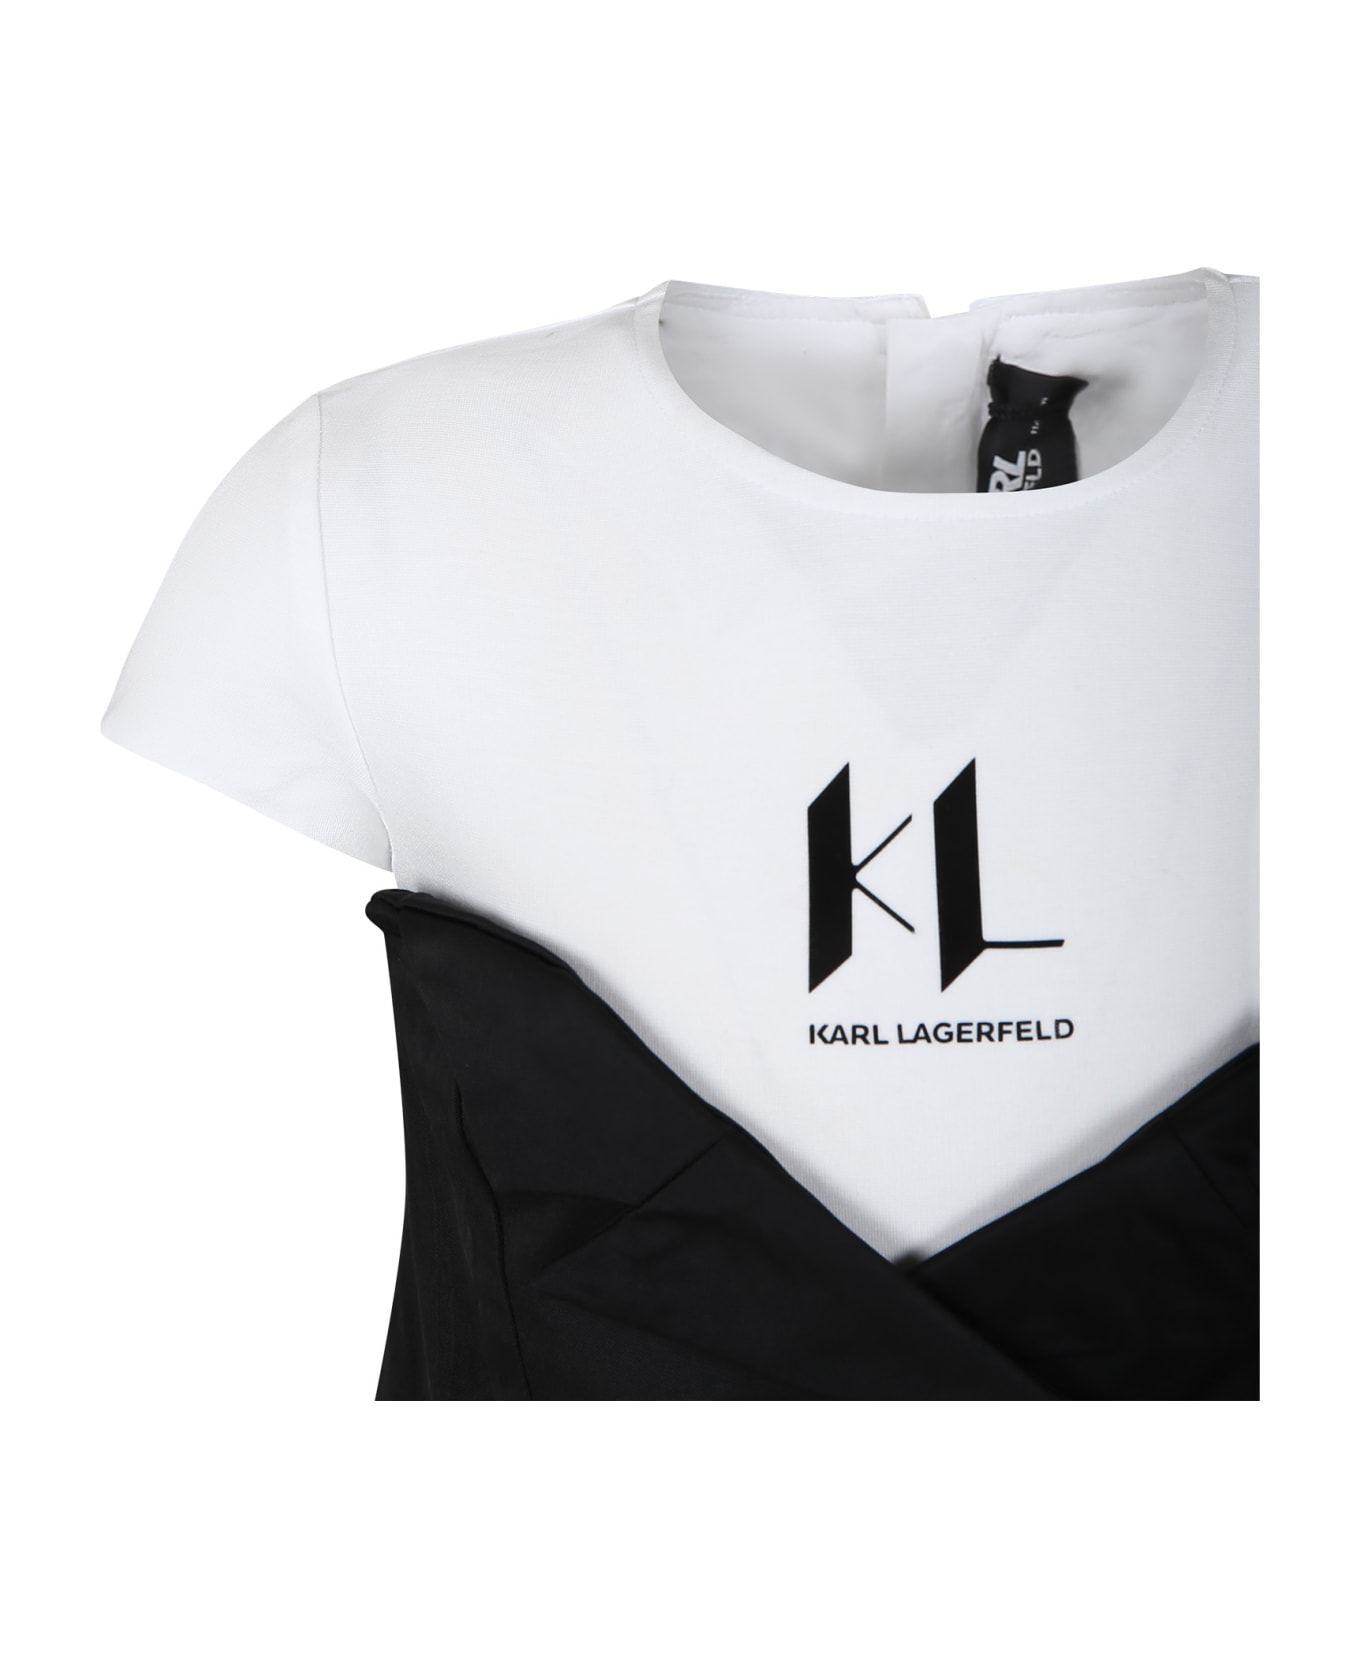 Karl Lagerfeld Kids Black Dress For Girl With Logo - Black